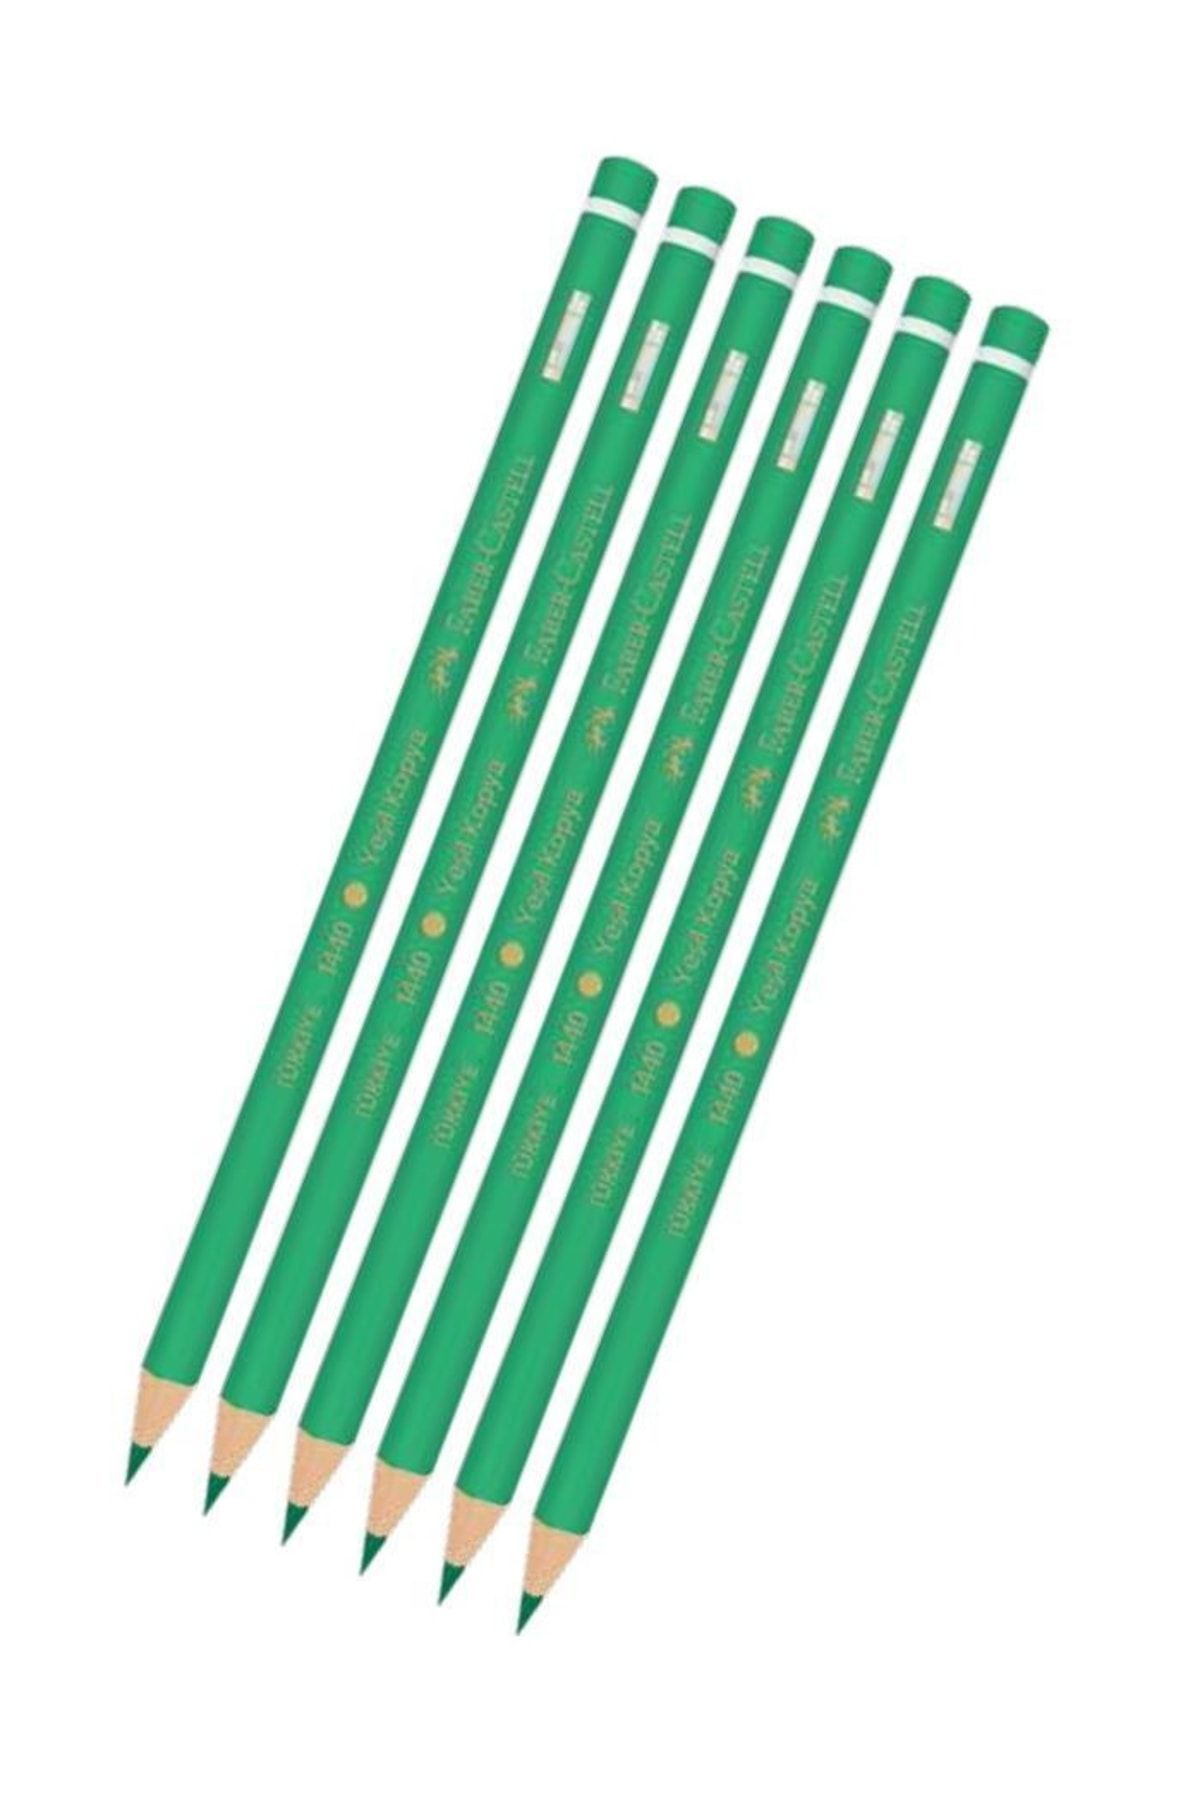 Faber Castell Yeşil Kalem Kopya 6 Adet Faber Yeşil Kurşun Kalem Başlık Kalemi 6 Adet